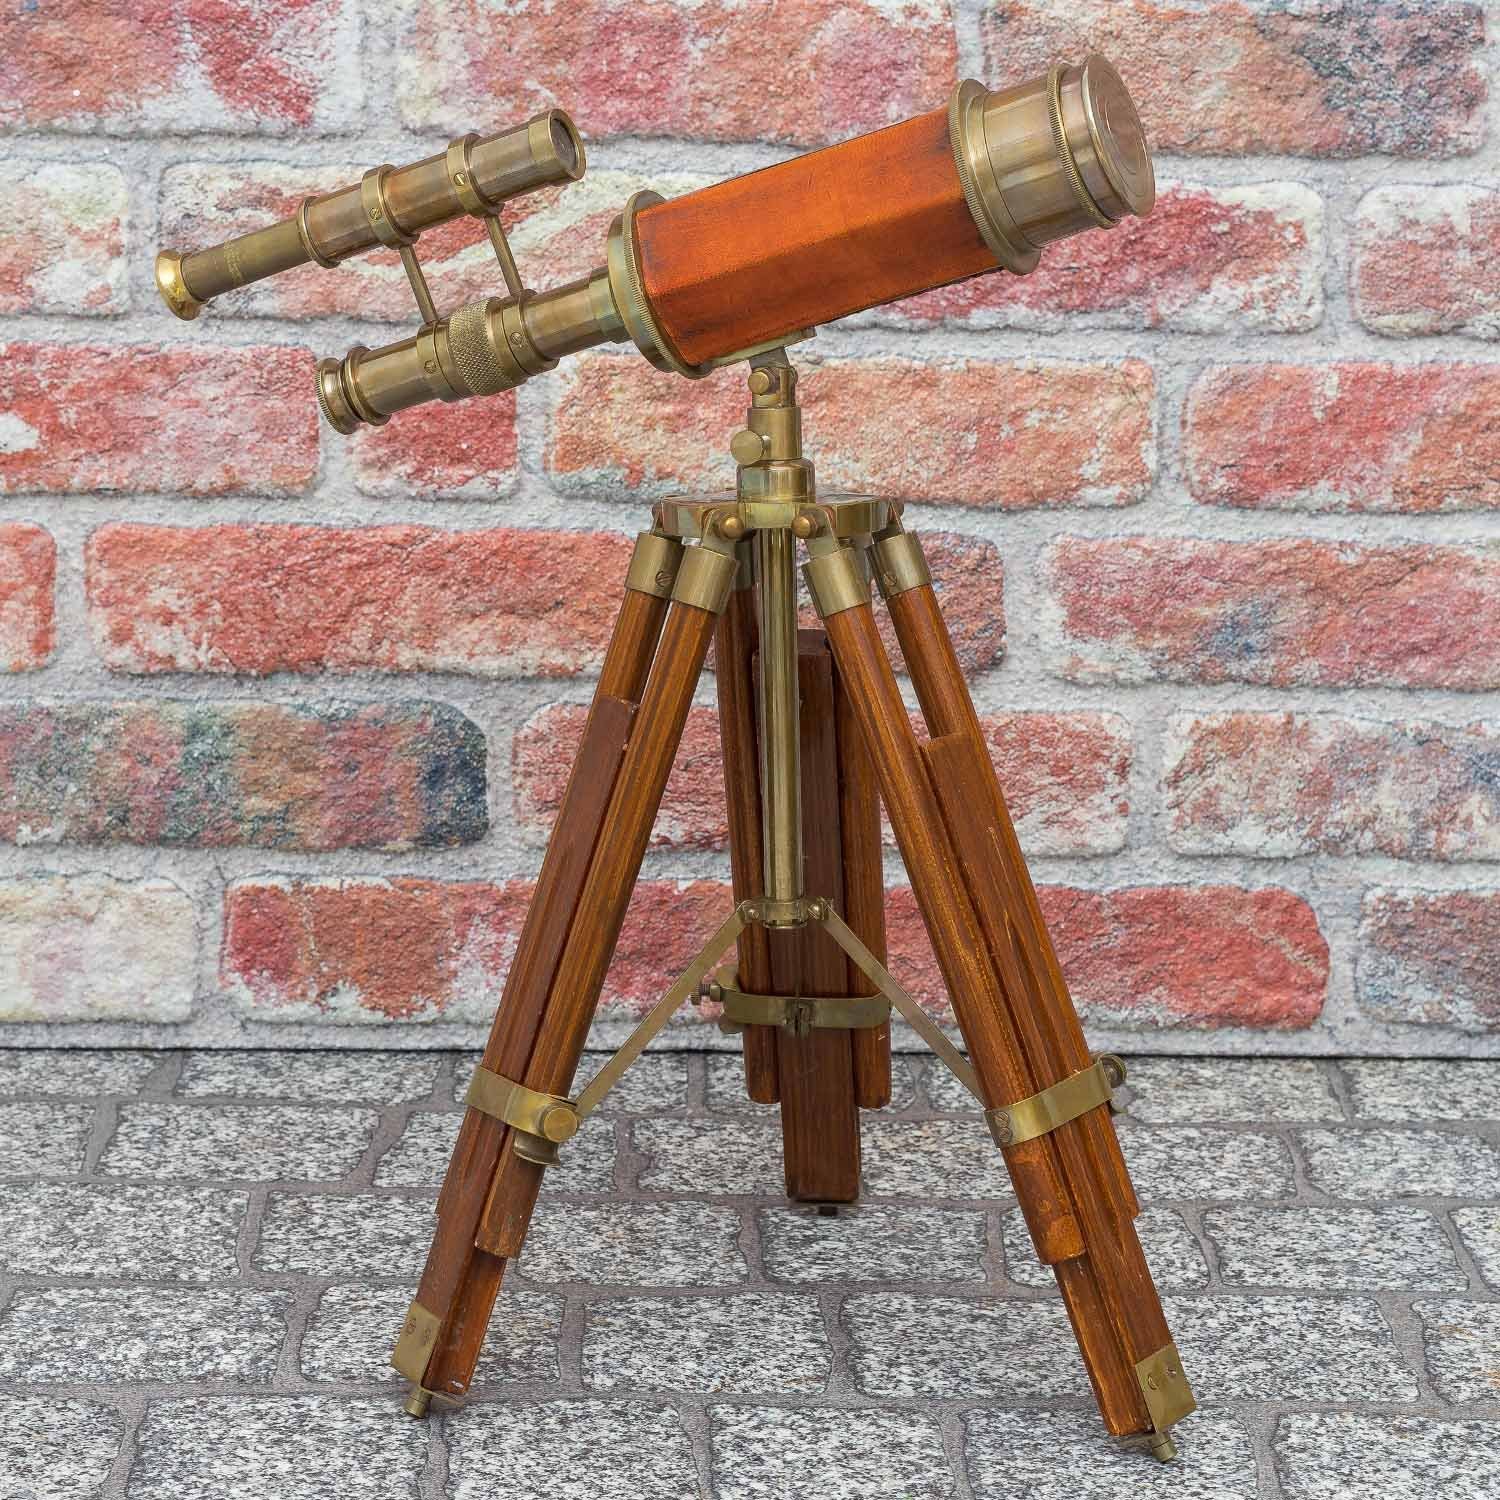 Aubaho Teleskop Messing Doppel-Teleskop Fernglas Holz-Stativ mit Fernrohr Antik-Stil